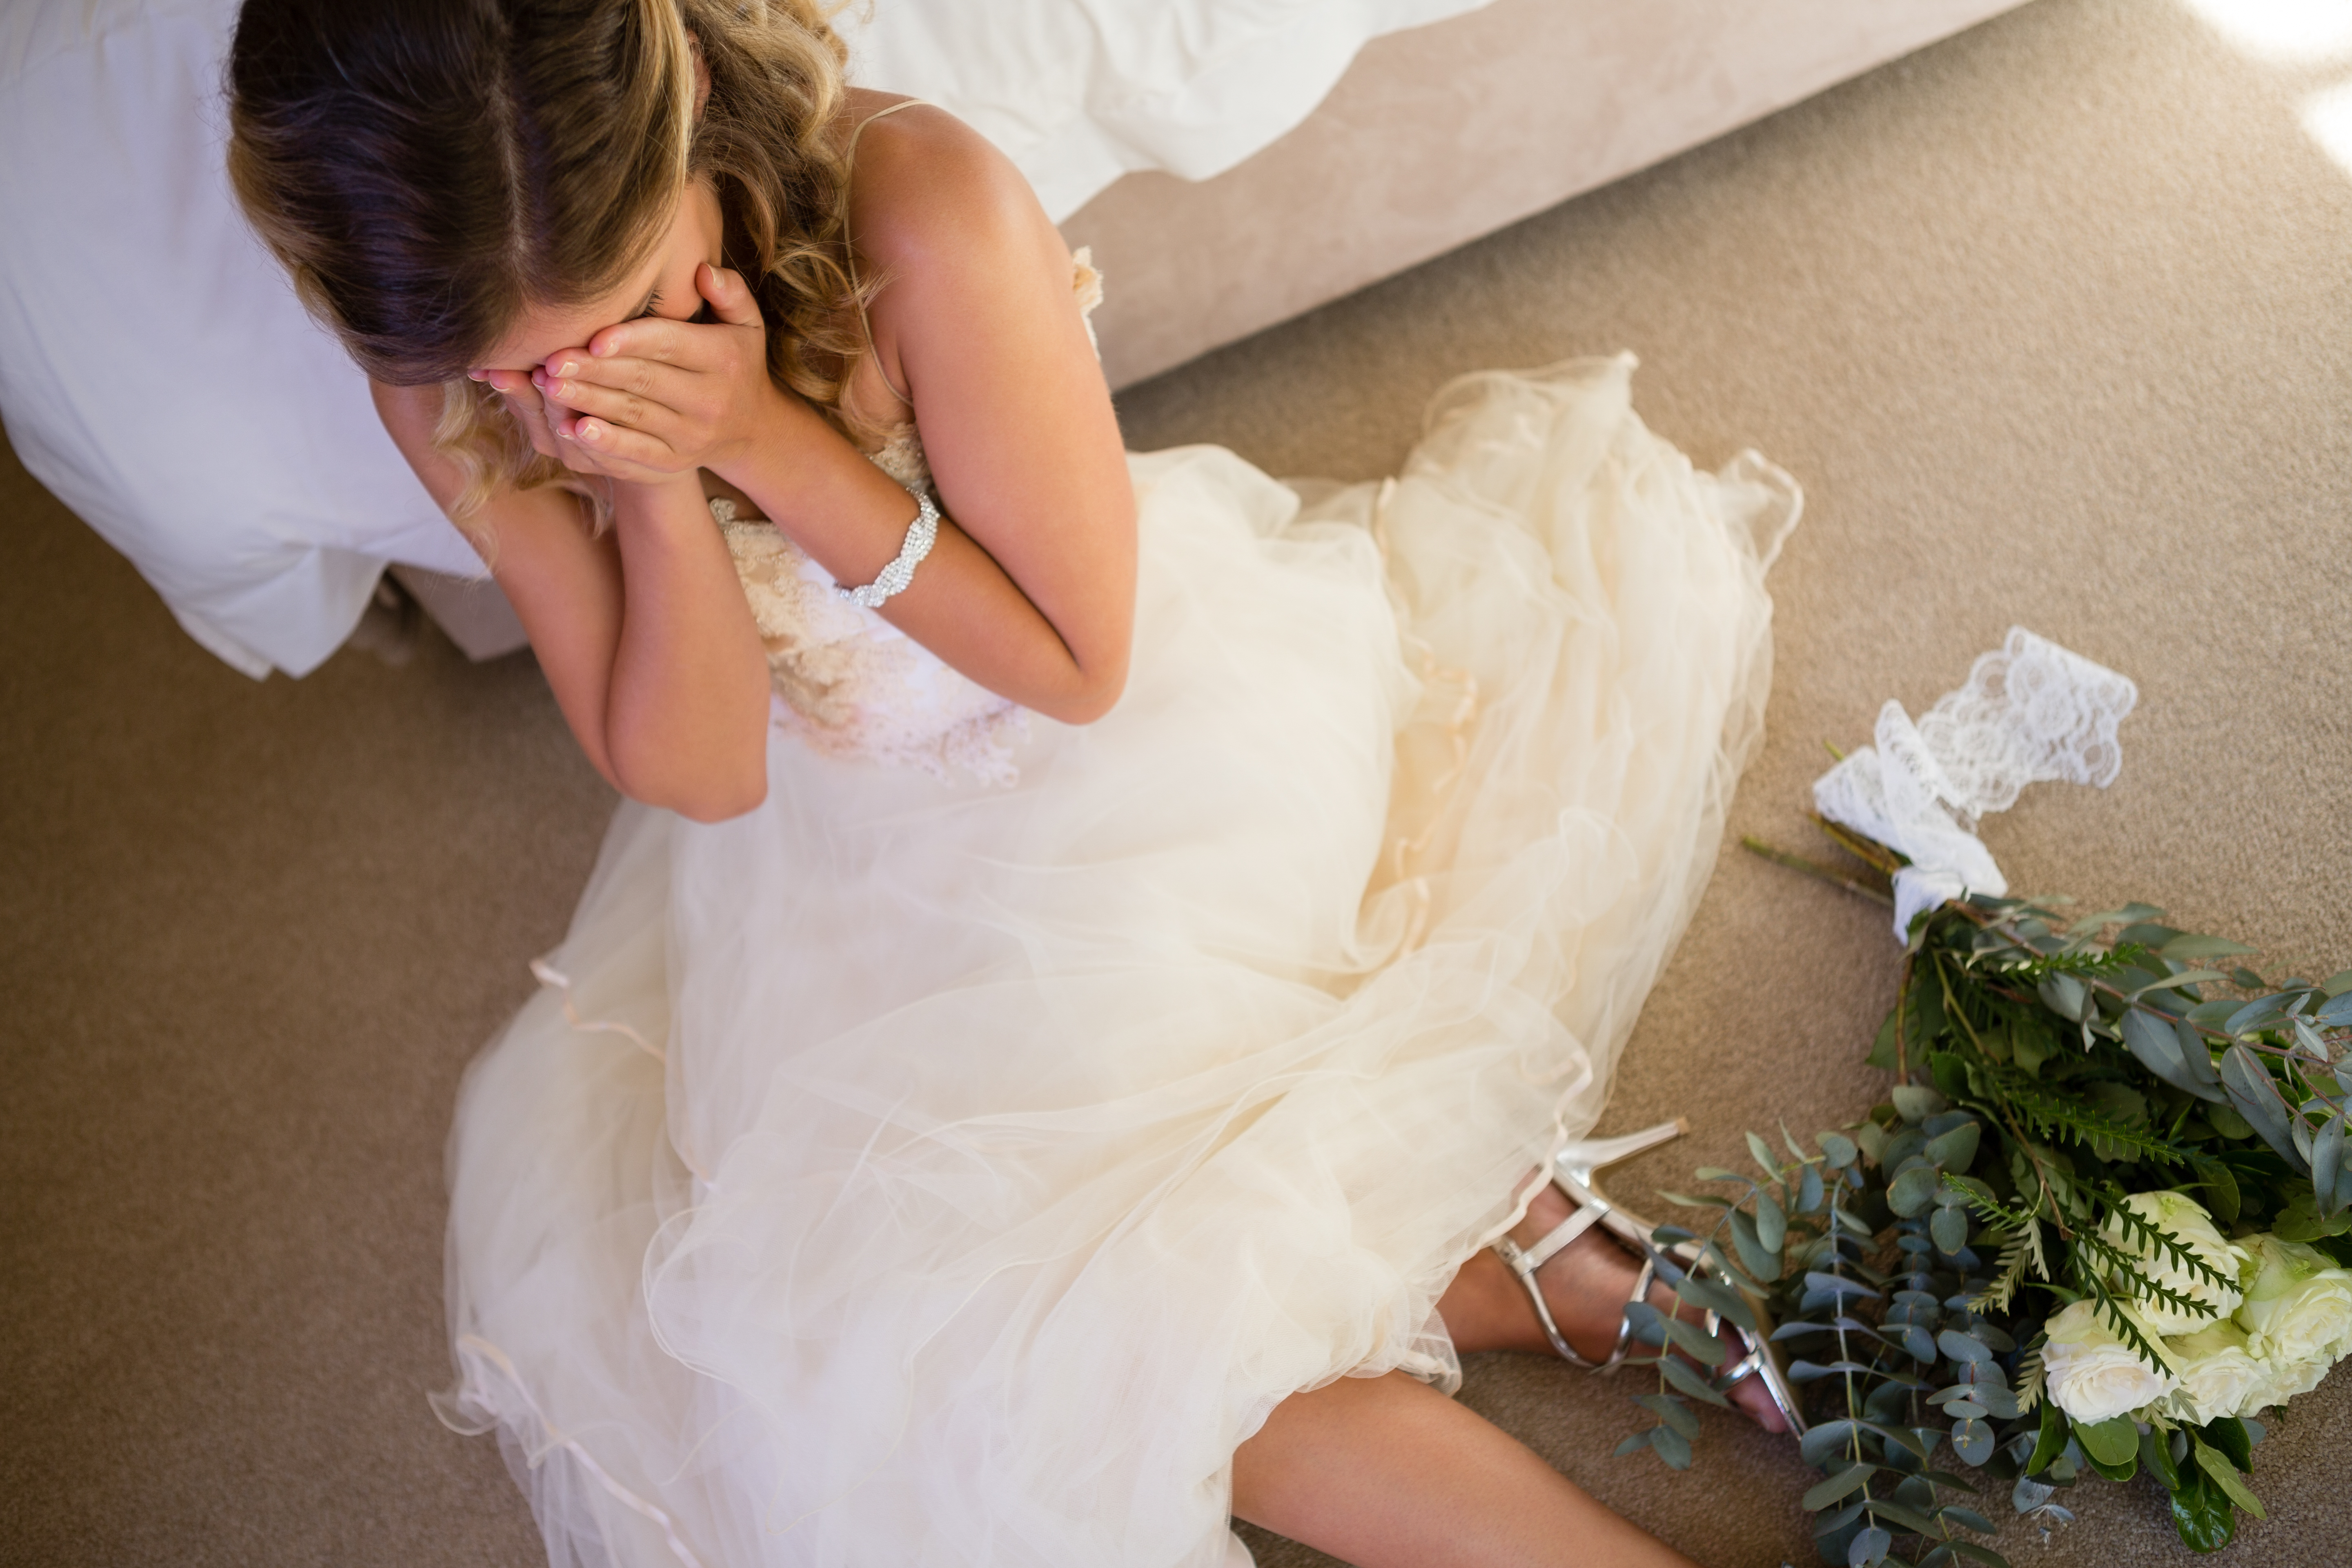 Une femme pleure sur le sol dans une robe de mariée | Source : Shutterstock